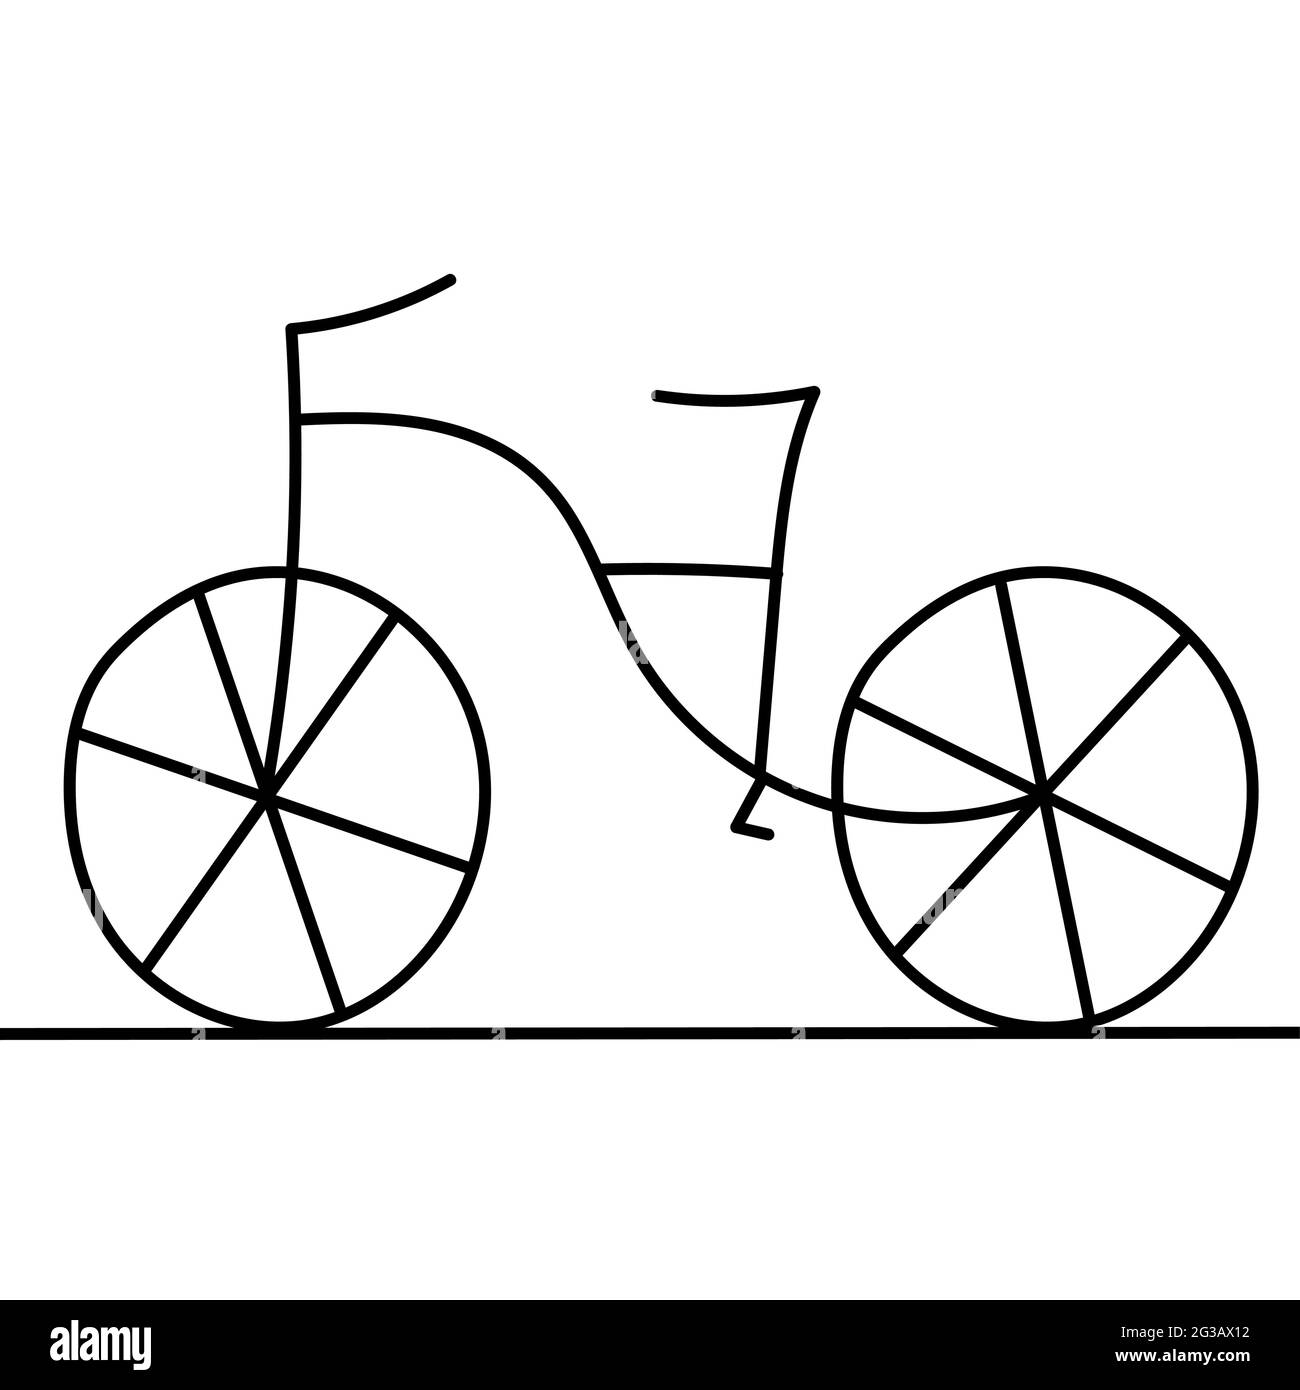 Niño En Bicicleta Dibujo Icono Del Vector Aislado En El Dibujado A Mano  Icono De La Bici Del Dibujo Icono De La Bicicleta Infantil De Infografía,  Sitio Web O 